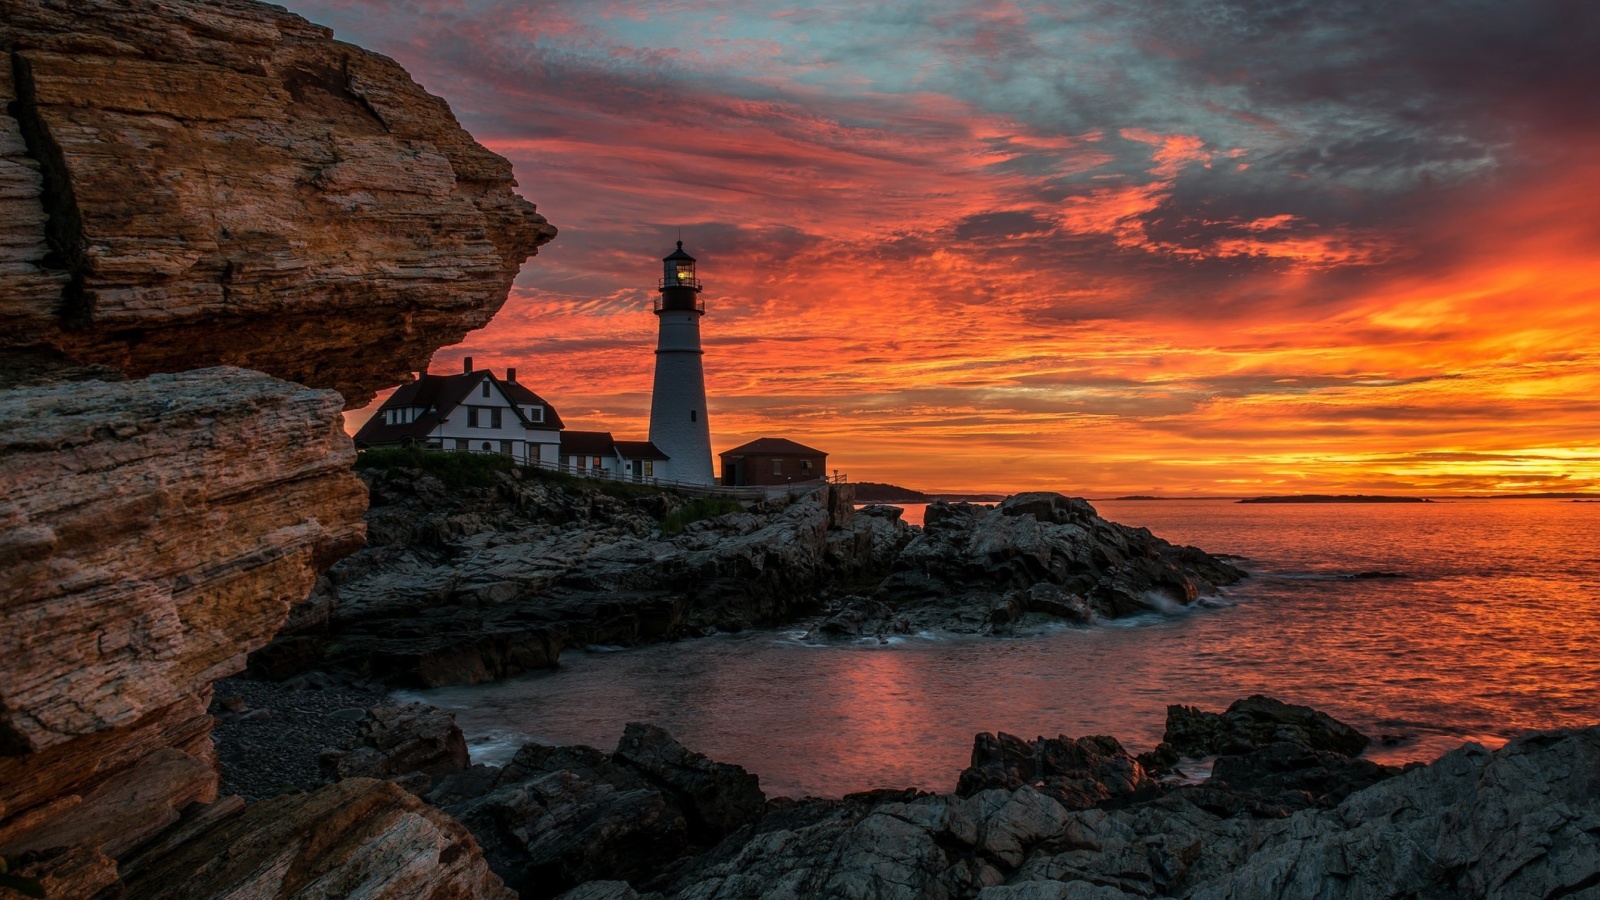 Обои Sunset and lighthouse 1600x900